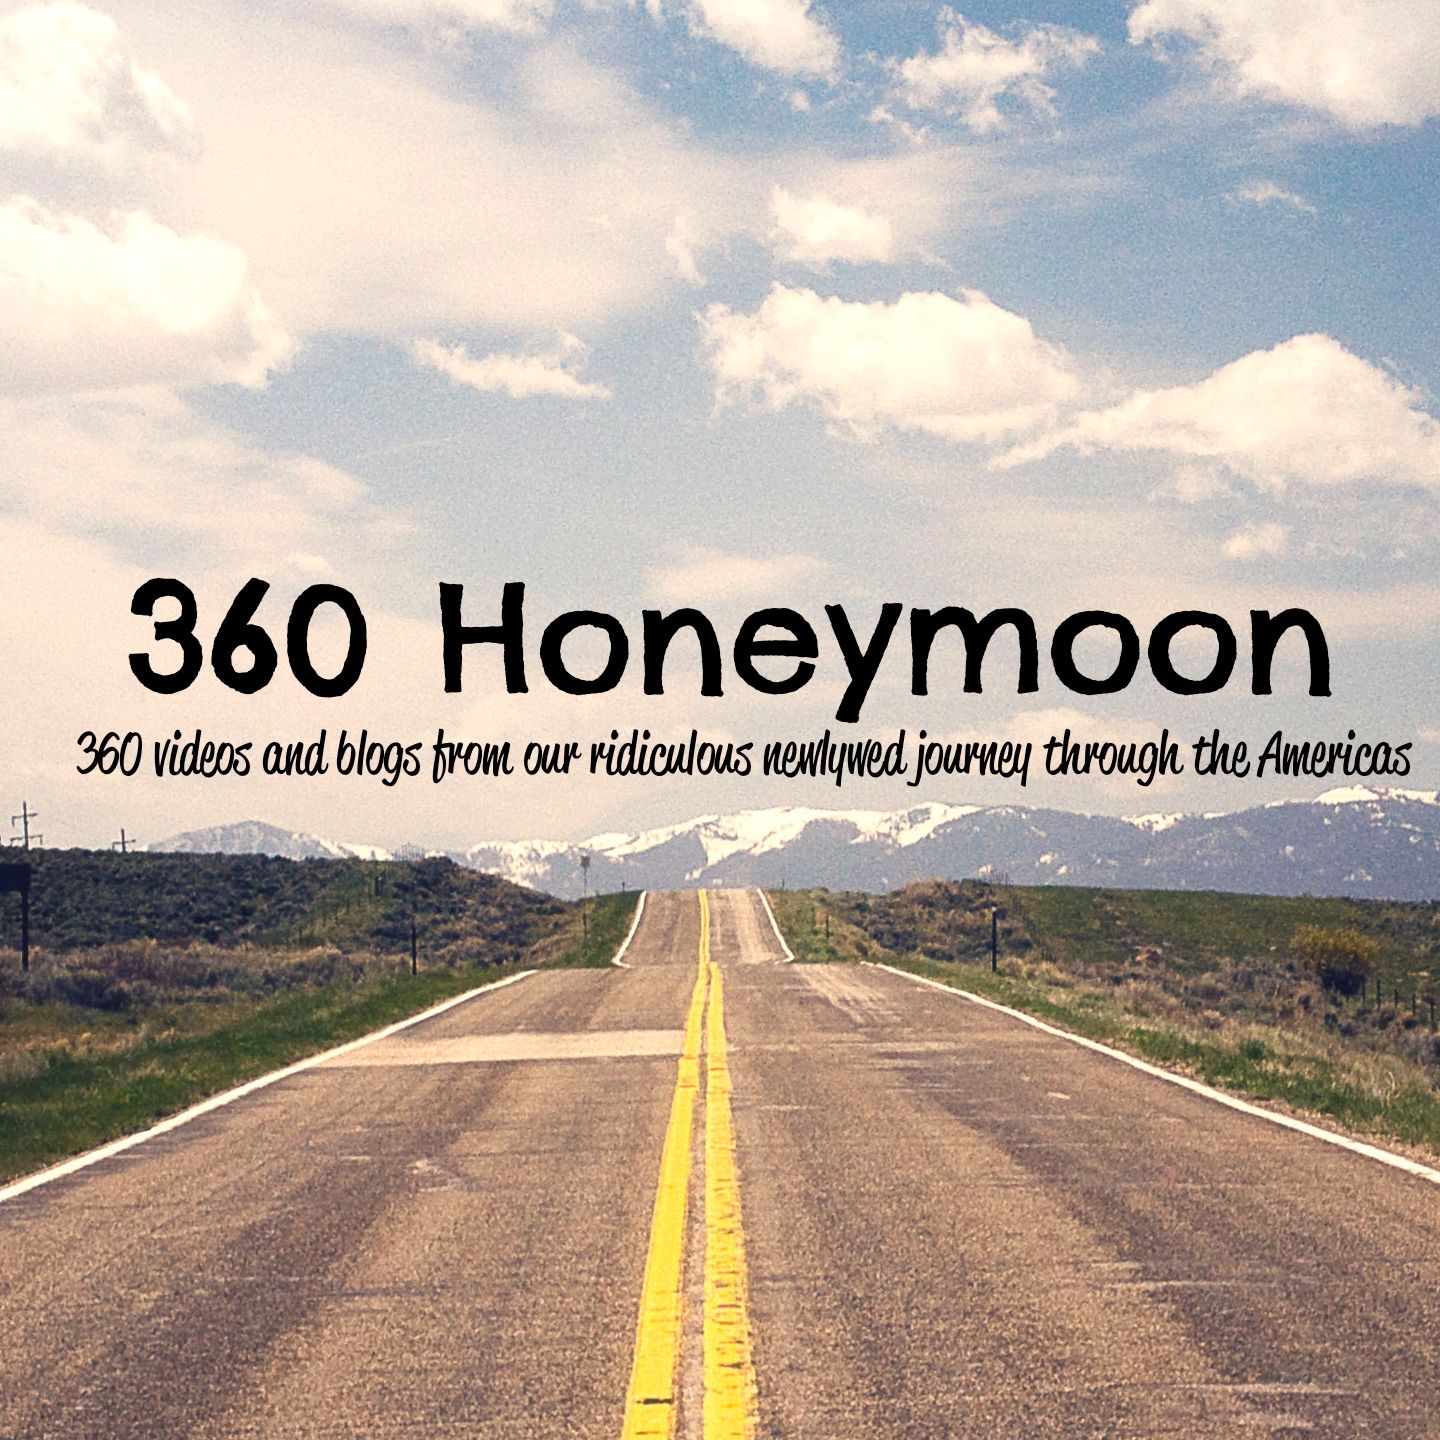 360 Honeymoon